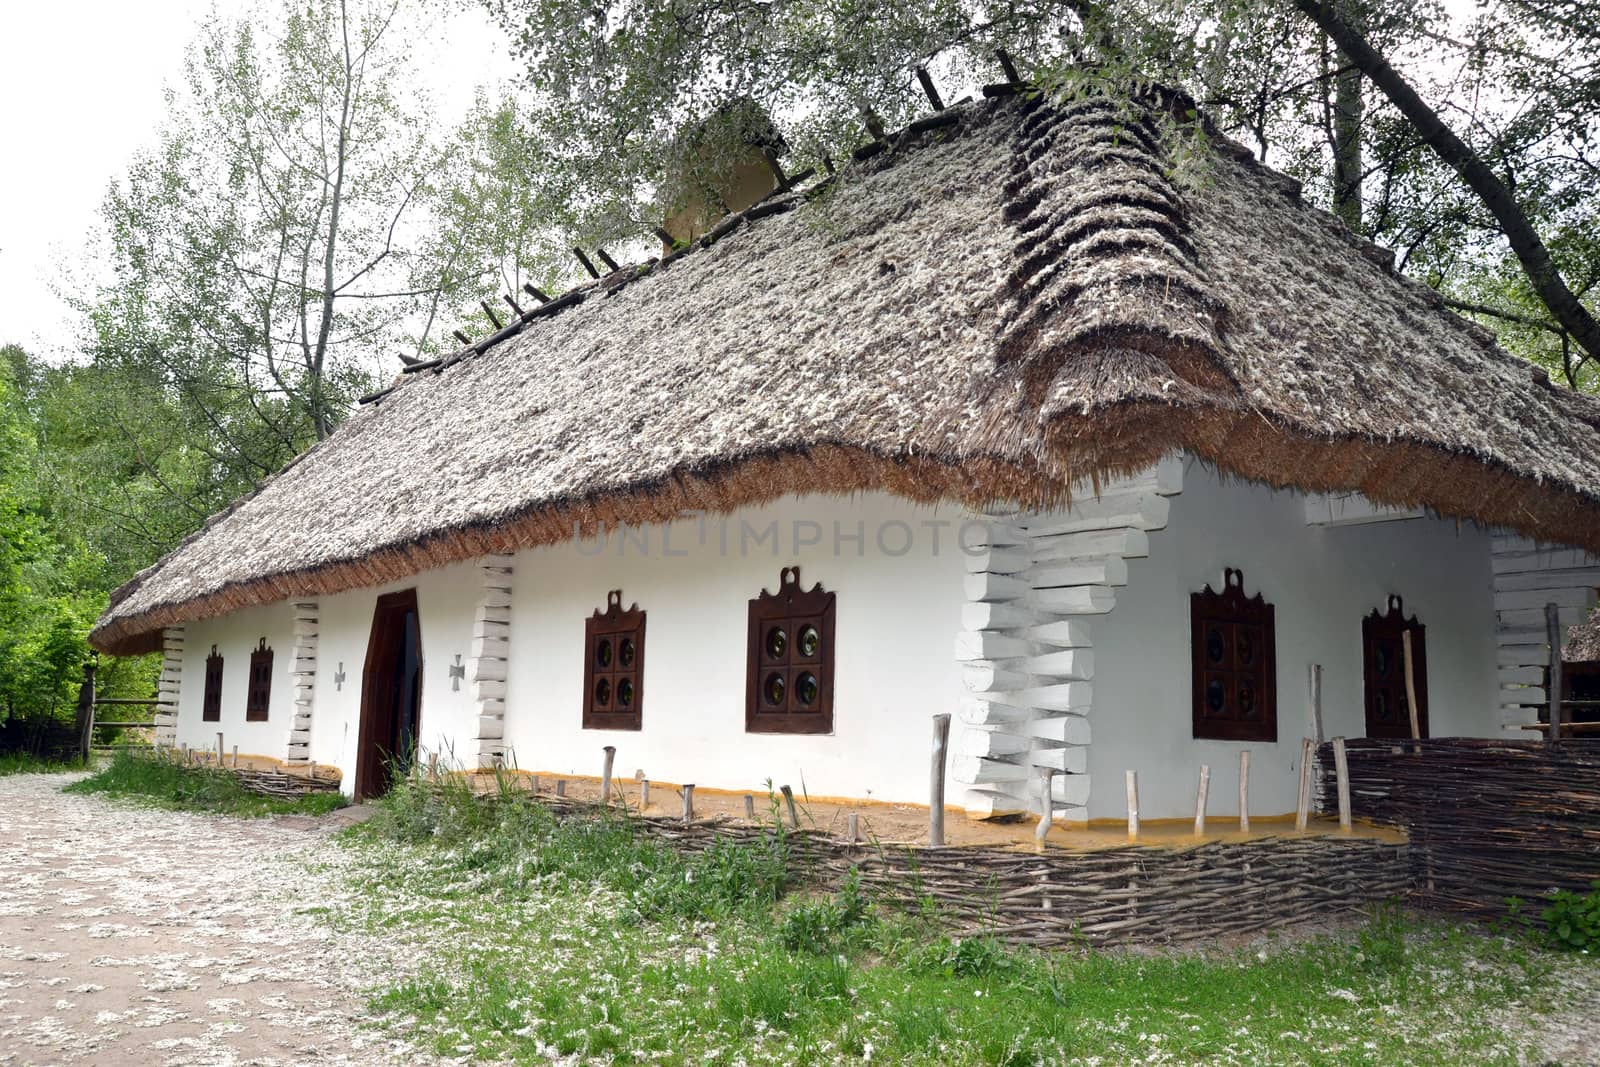 Ukrainian farmhouse with a woven fence